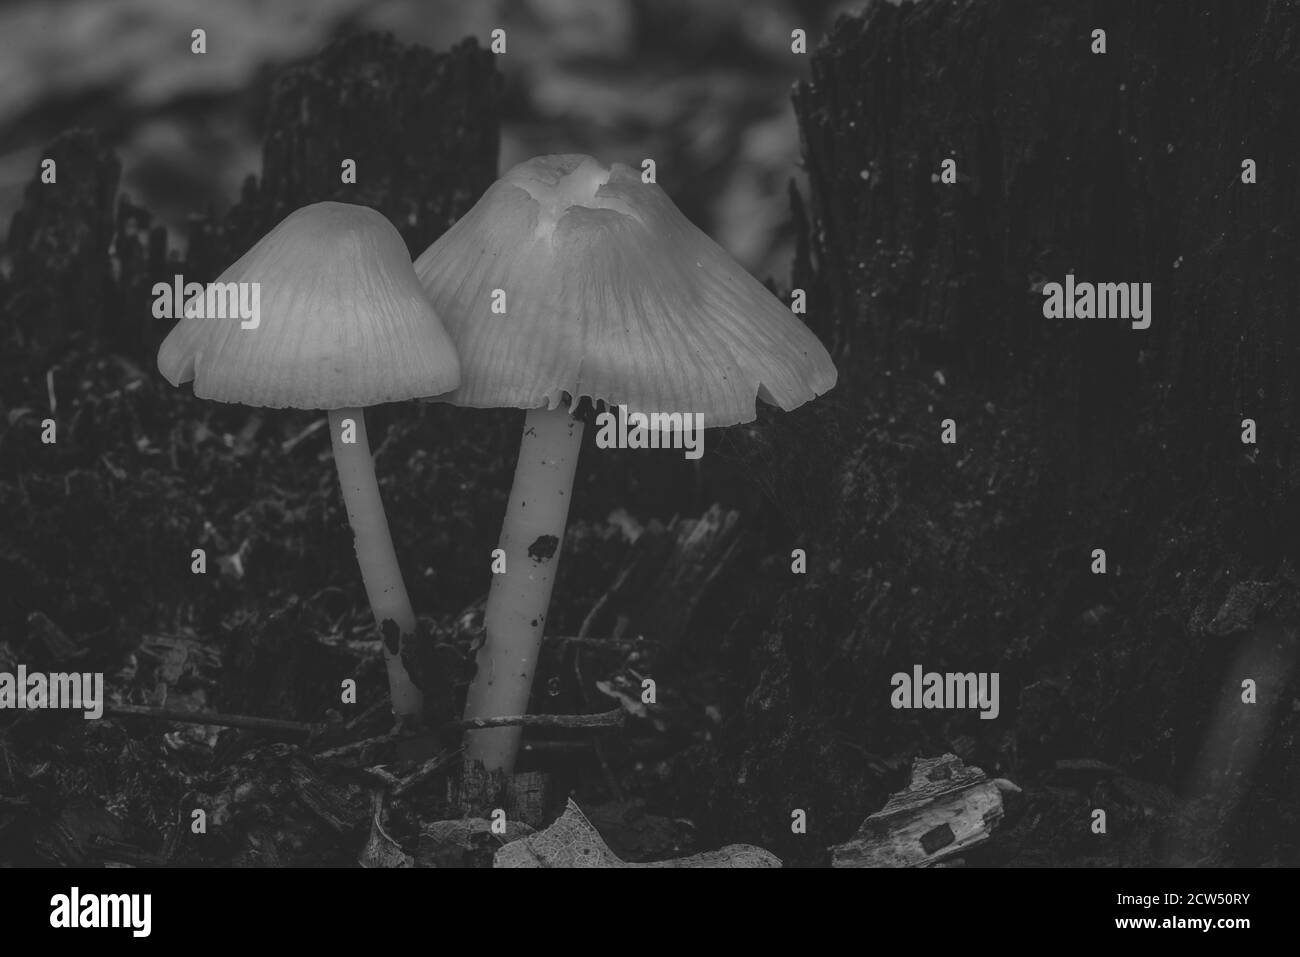 champignons sur un tronc d'arbre, champignons photographiés artistiquement, contraste soyeux, photo en noir et blanc Banque D'Images